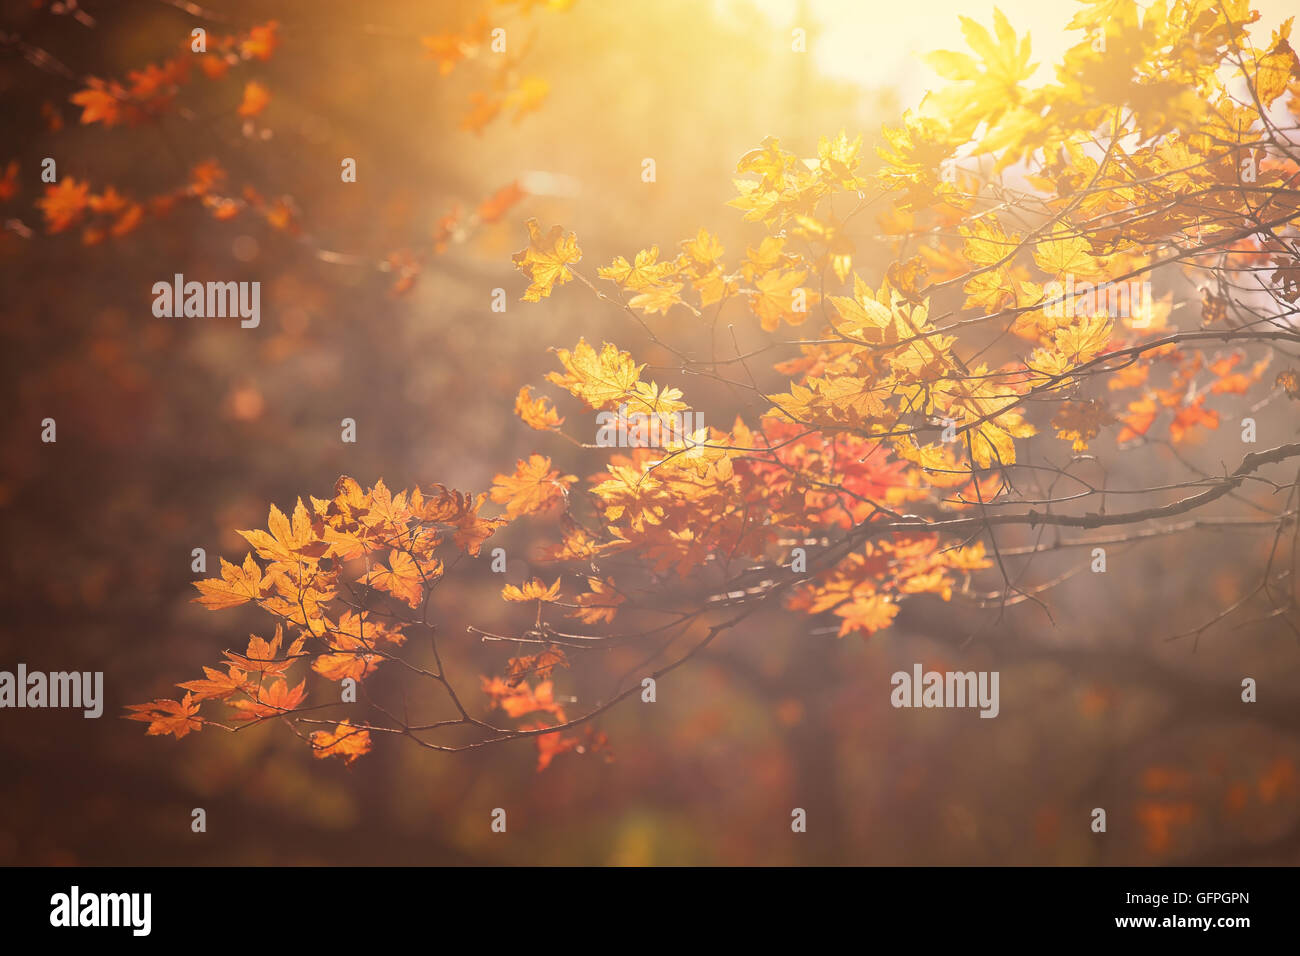 Autumn maple tree in sunlight Stock Photo